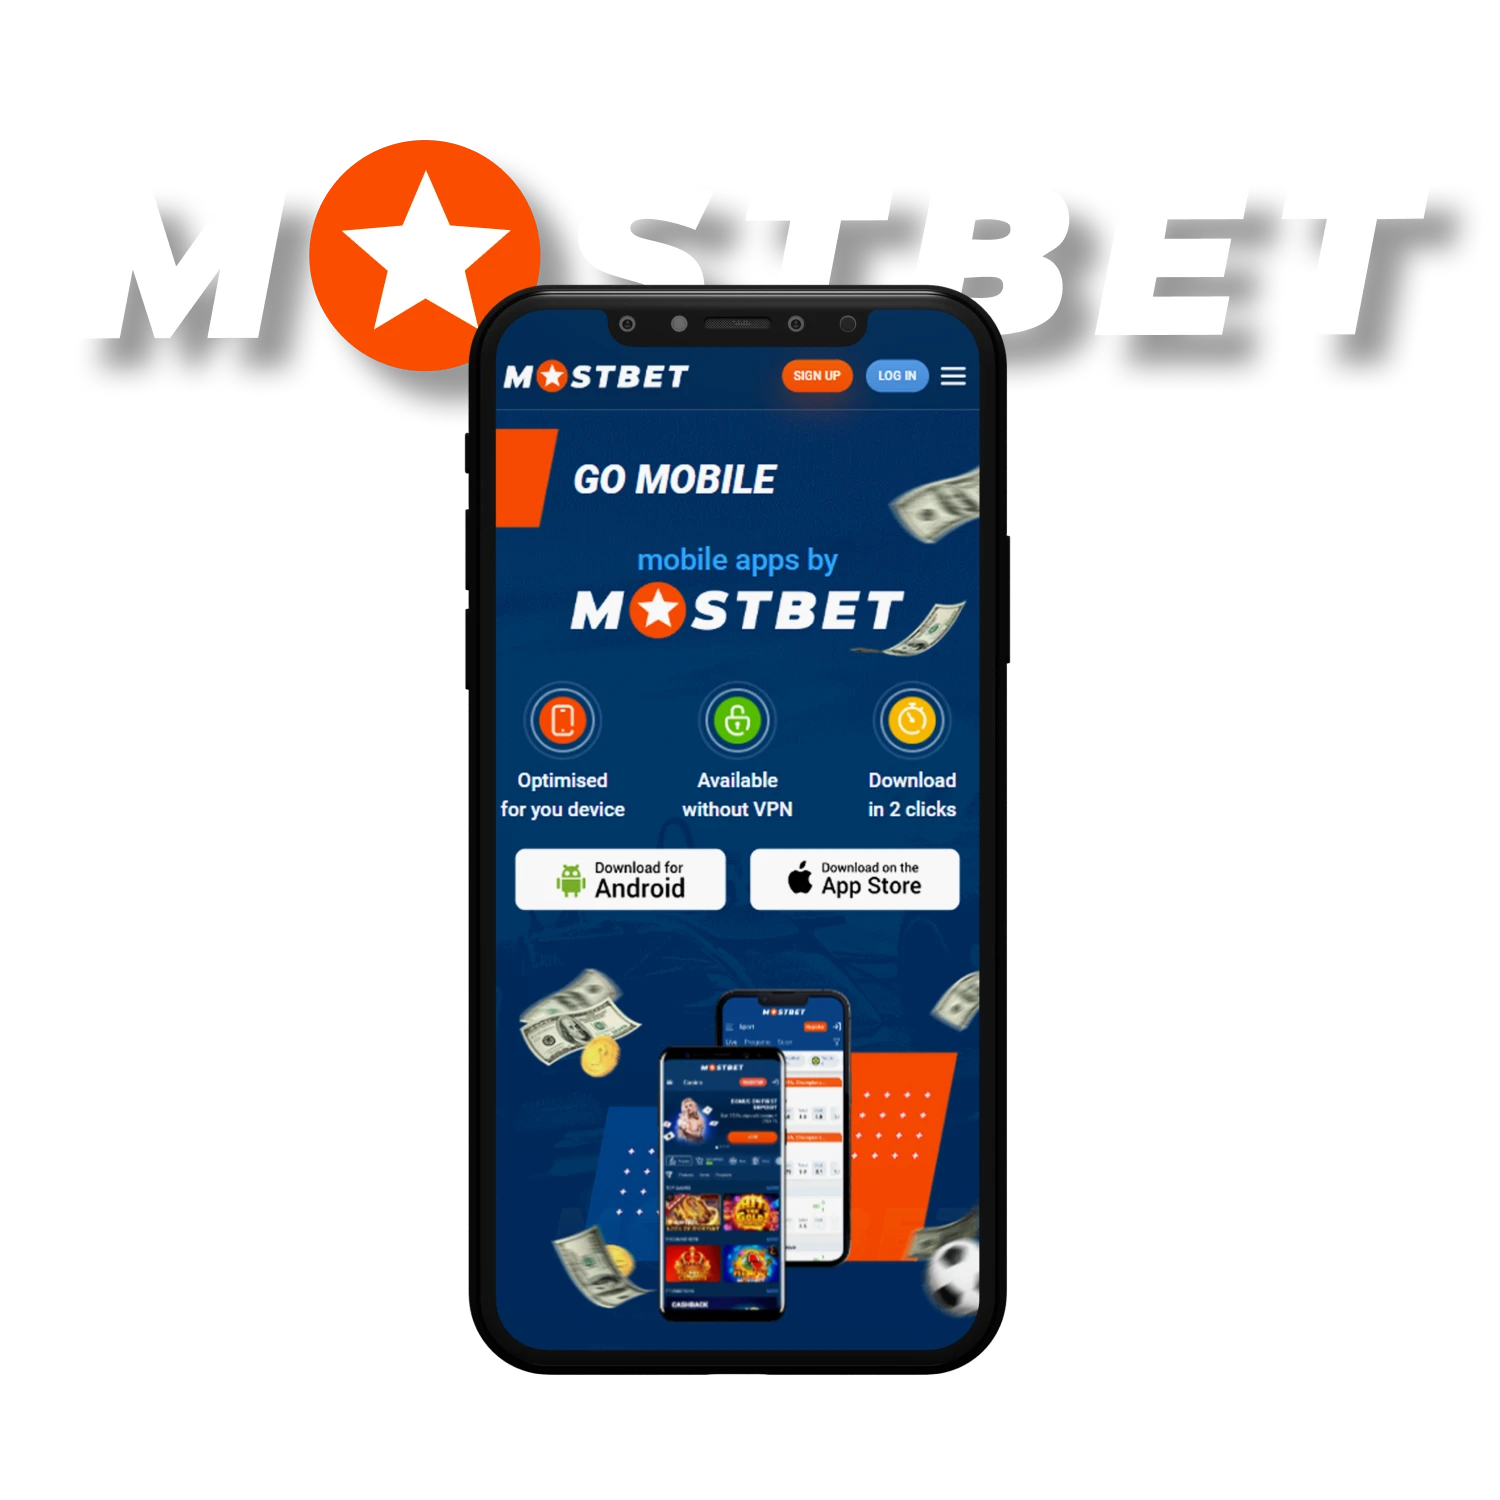 12 Questions Answered About La popularidad de Mostbet se debe a su amplia gama de opciones de apuestas deportivas, su capacidad para apostar en vivo y la diversidad de juegos de casino disponibles. La facilidad de uso y la accesibilidad de la plataforma la convierten en una elección